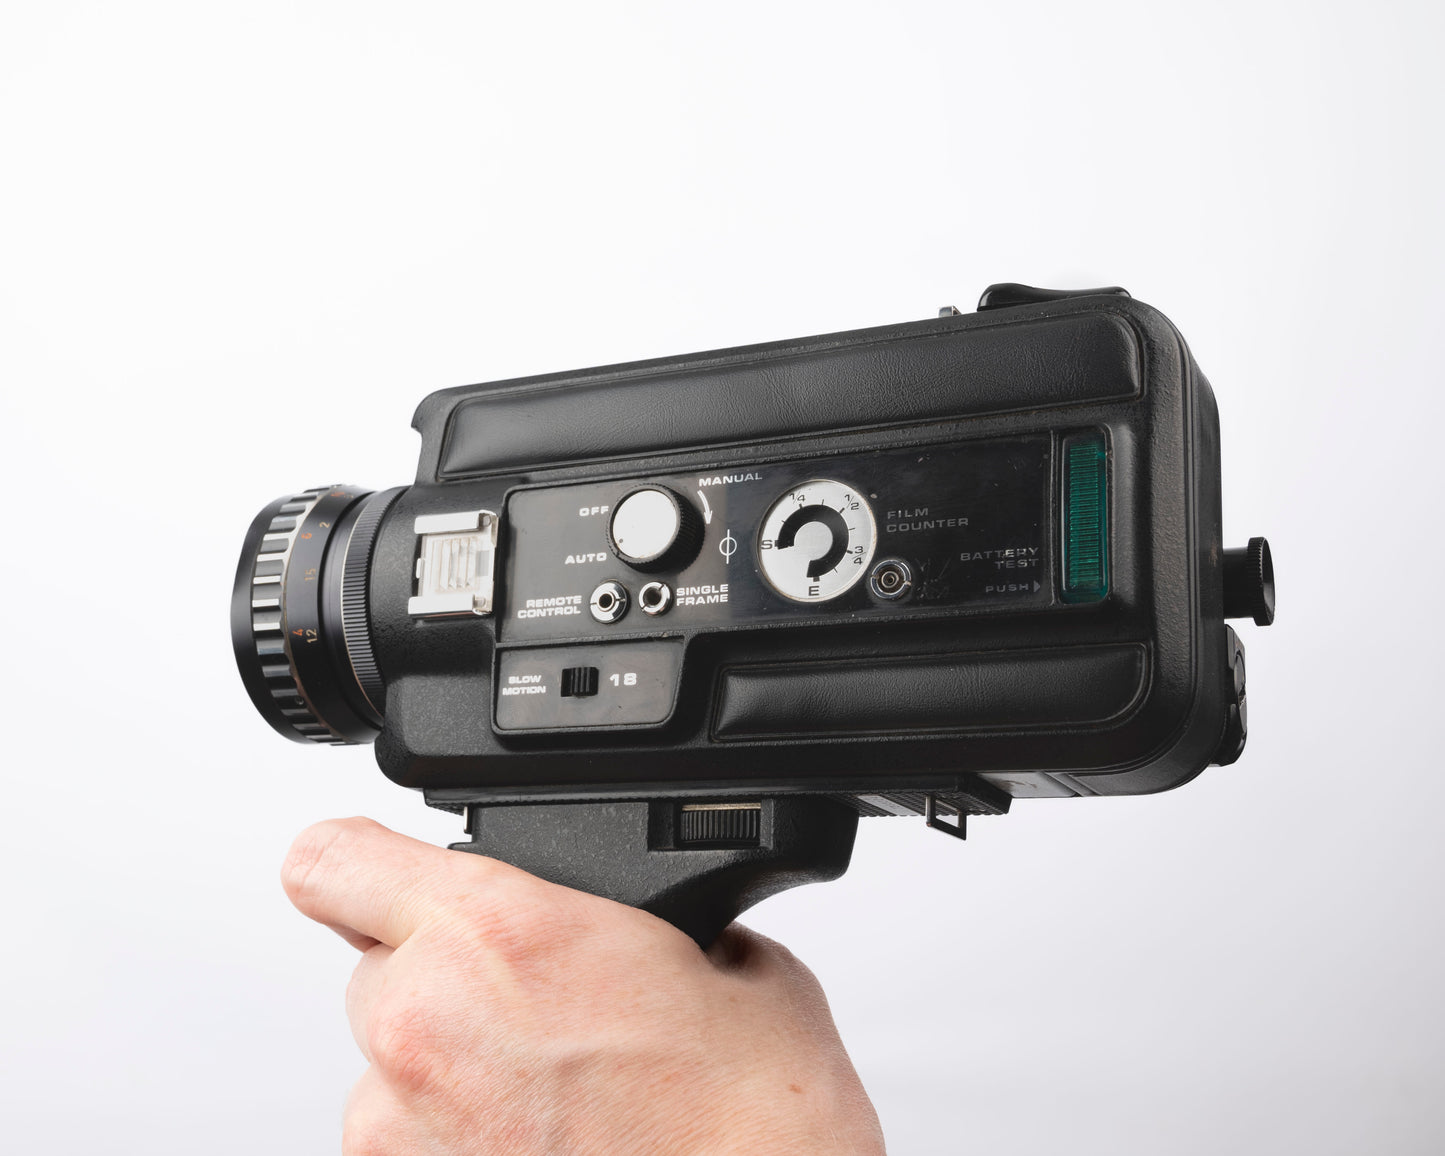 Argus Cosina Model 735 Super 8 movie camera